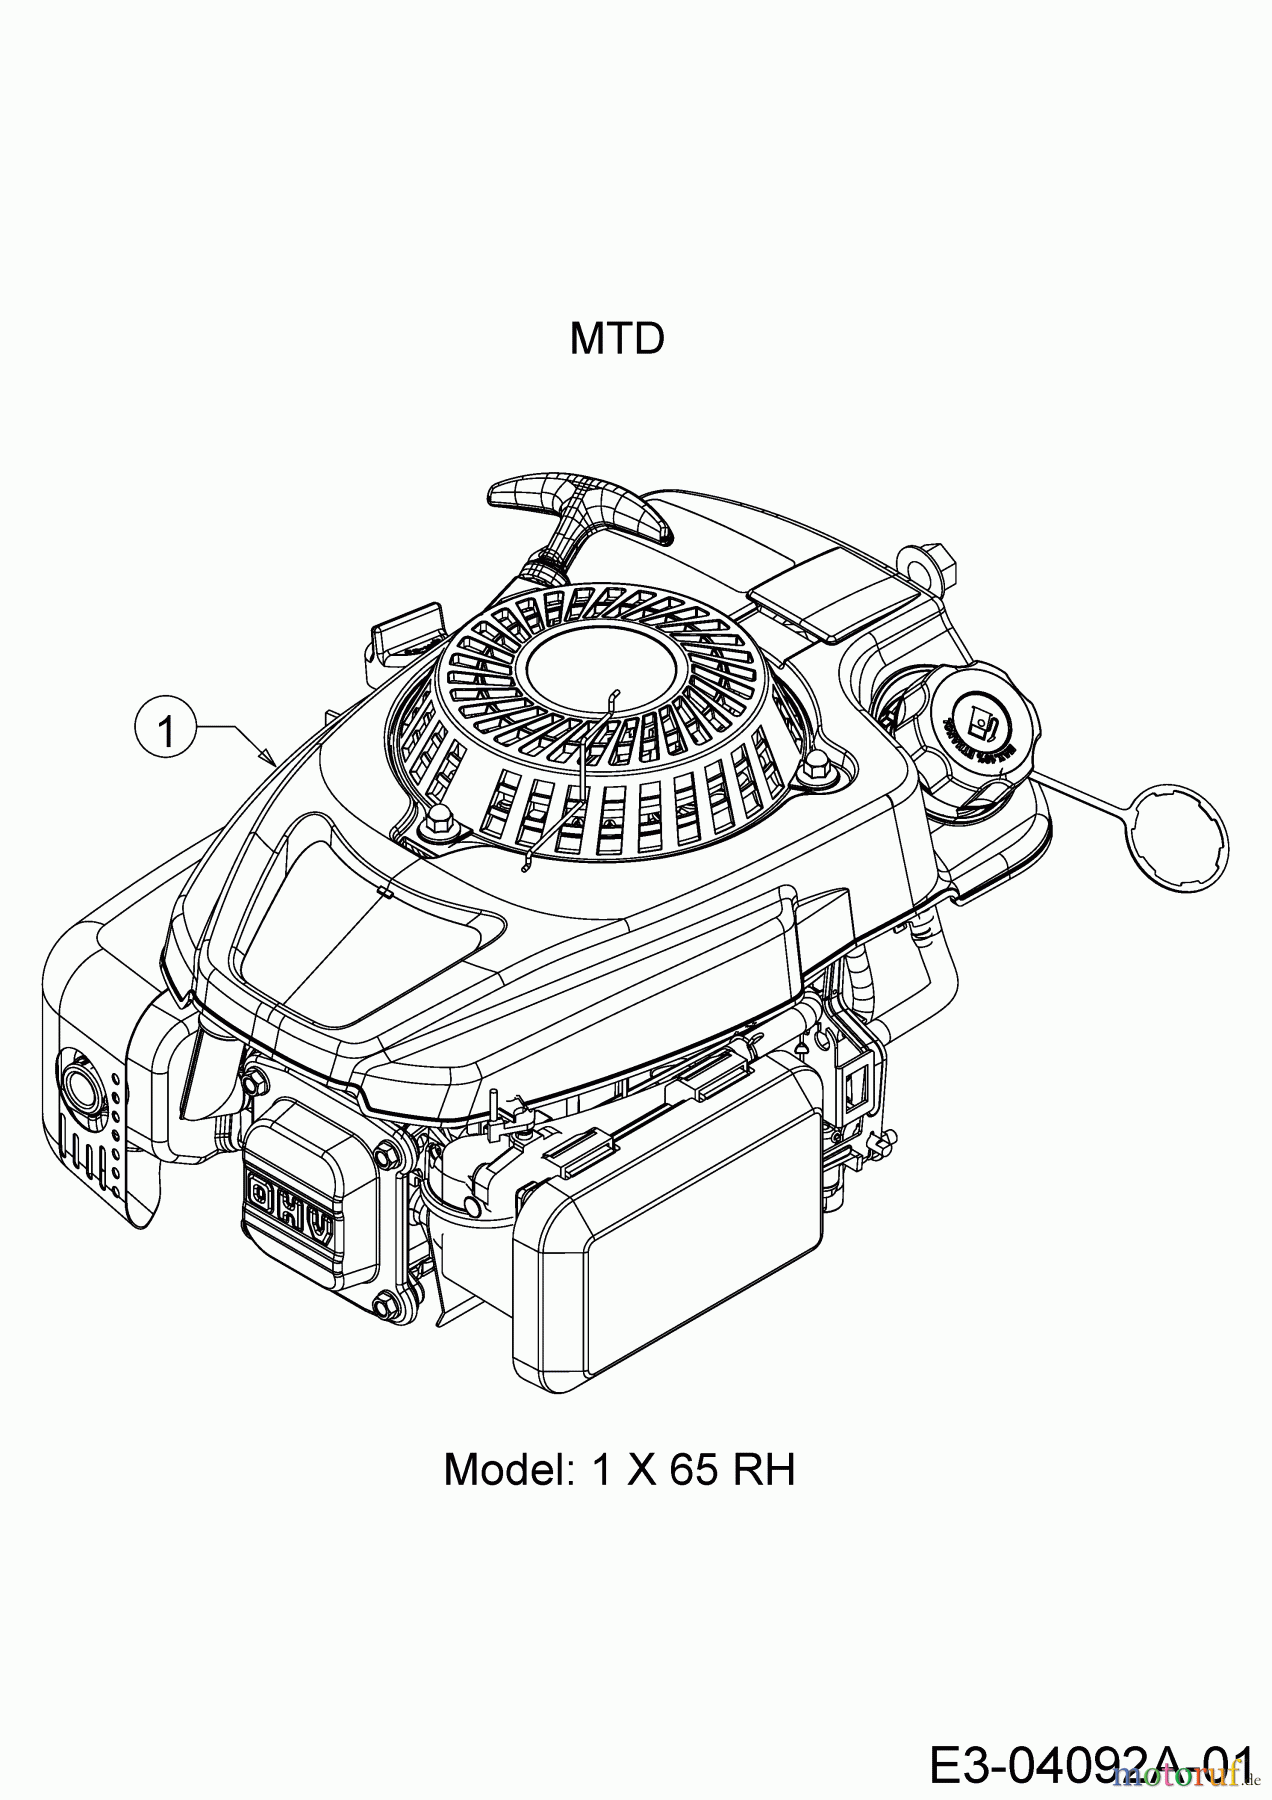  Mastercut Motormäher mit Antrieb MC 53 SPO 12A-84J6659  (2015) Motor MTD